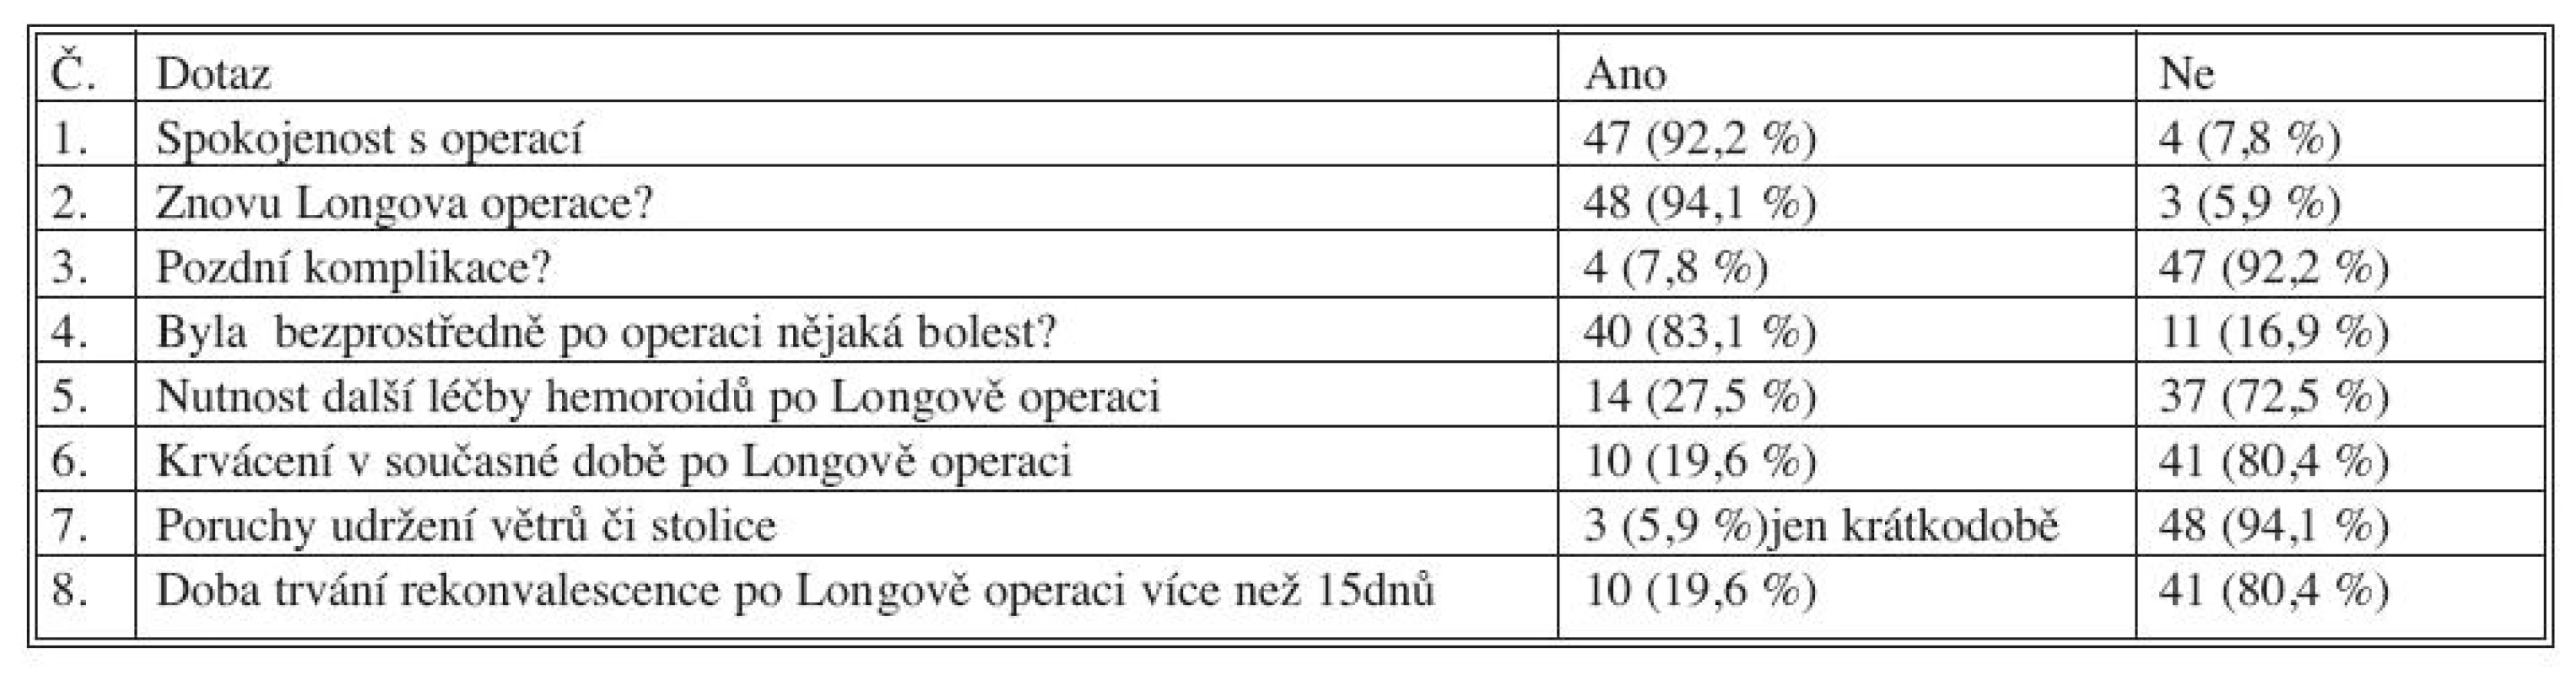 Výsledky dotazníkového šetření nemocných po Longově operaci
Tab. 2. Questionnaire survey results of the patients after Longo’s operation